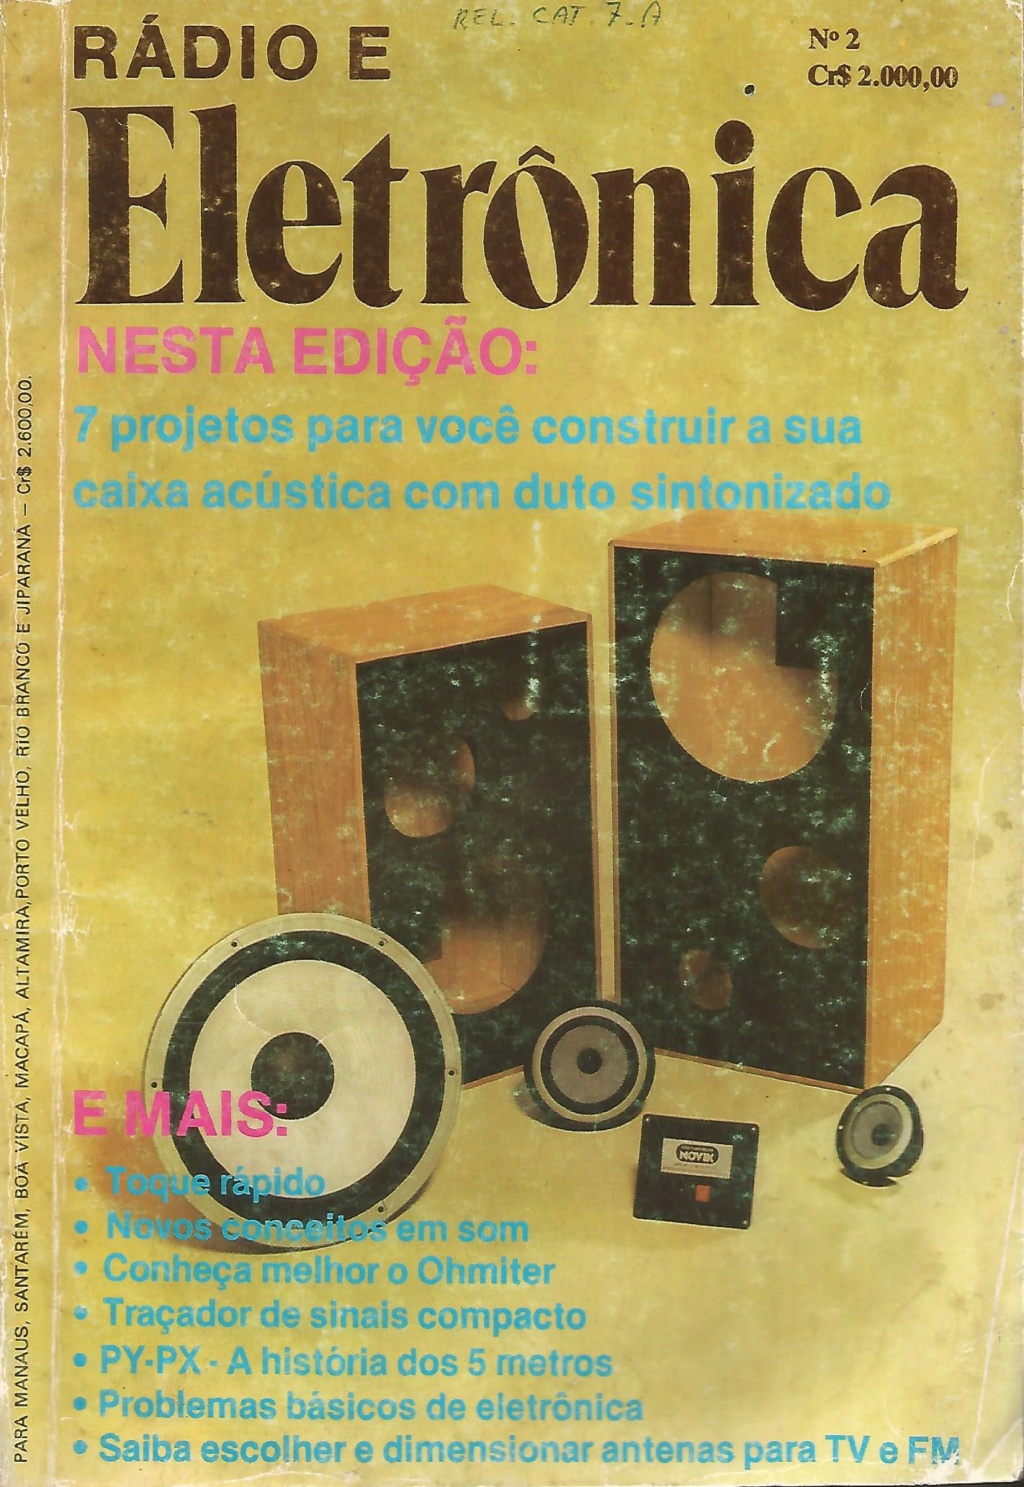 Link Revista Rádio e Eletrônica NR 02 Capa_r10